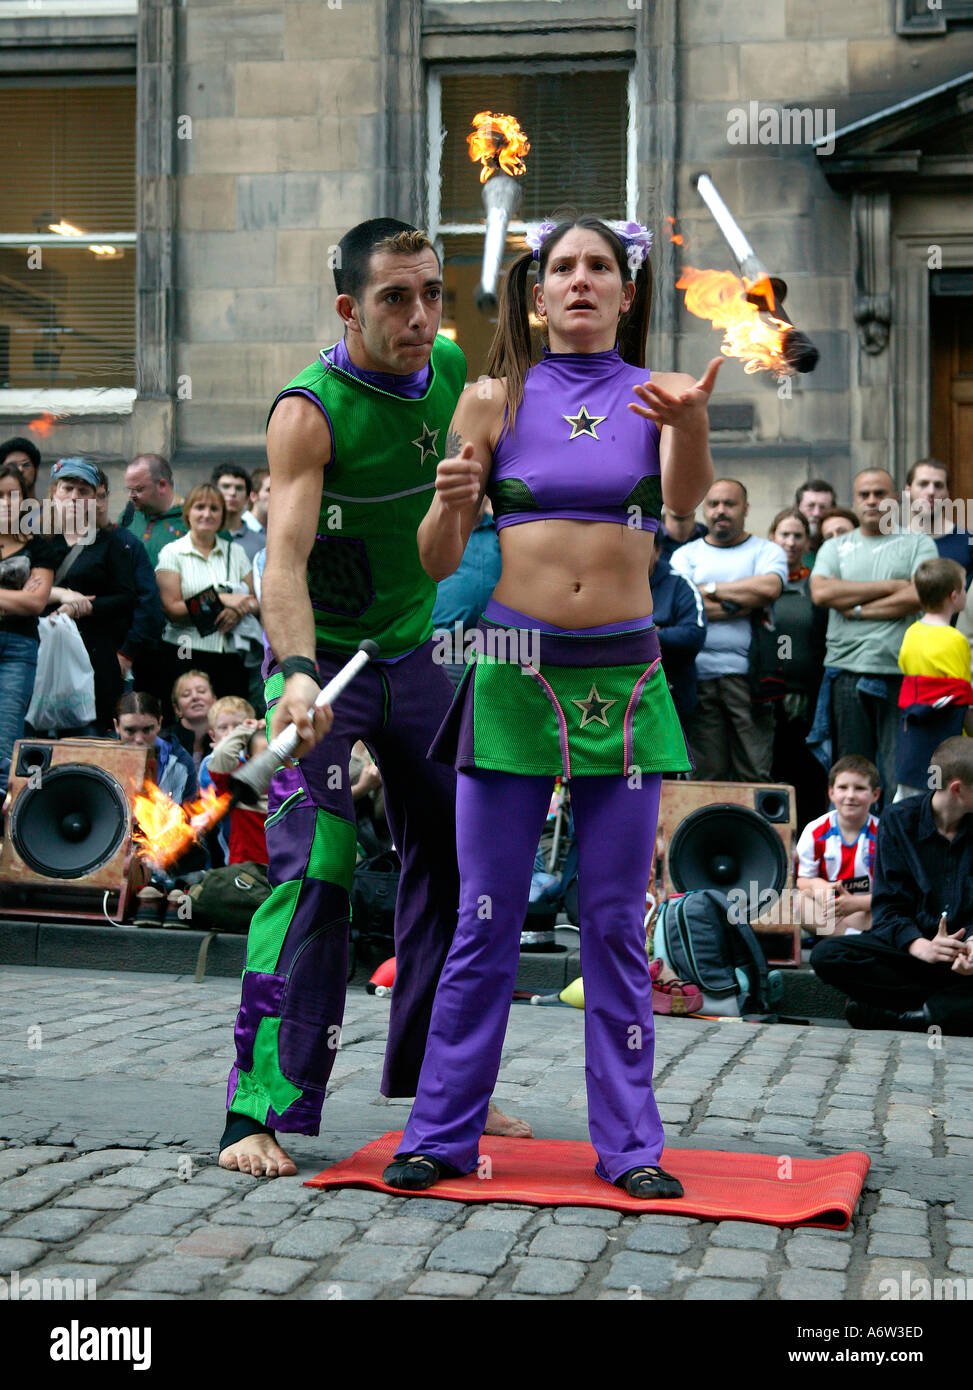 Männliche und weibliche Street Performer jonglieren Feuer Fackeln an der Edinburgh Fringe Festival Schottland Großbritannien 2004 Stockfoto